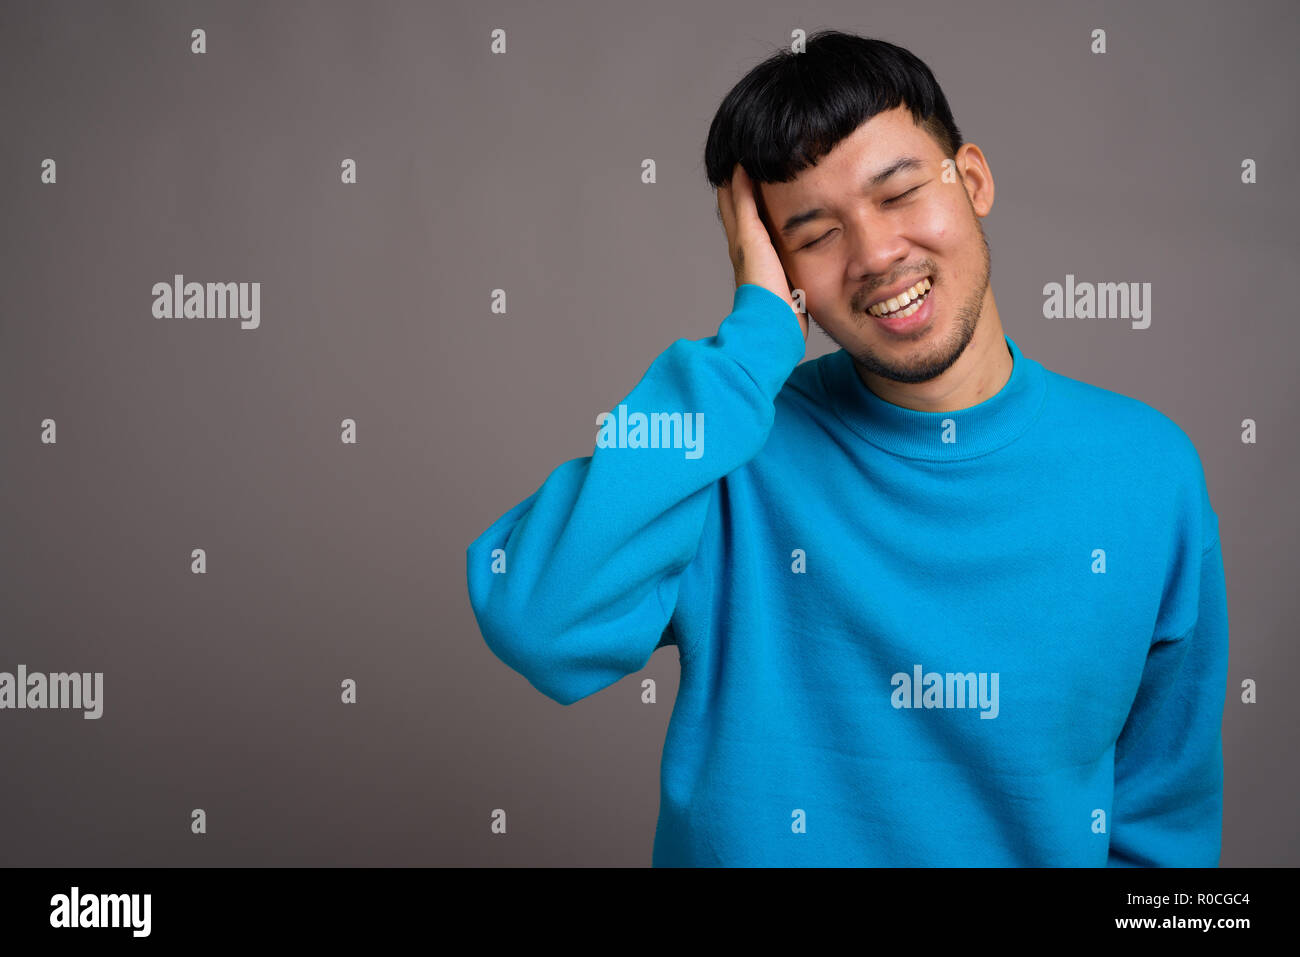 Portrait von jungen asiatischen Menschen gegen den grauen Hintergrund Stockfoto